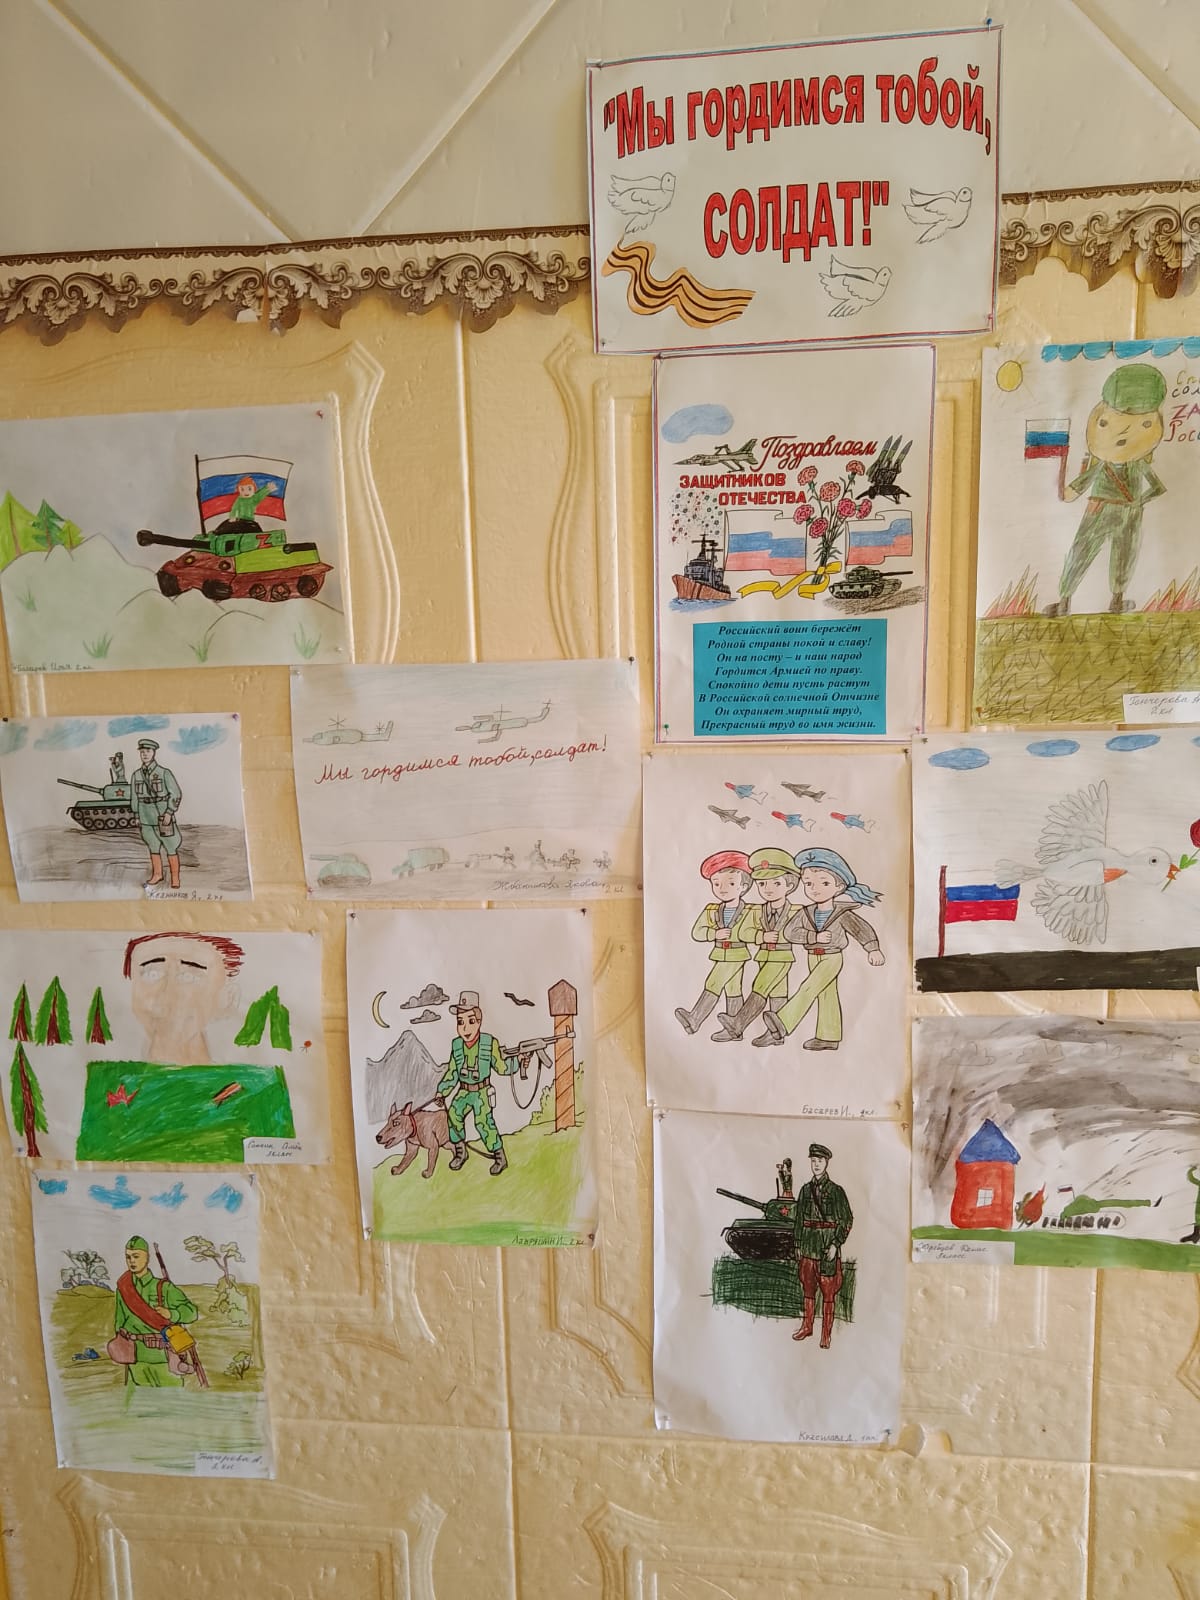 Учащиеся младших классов поучаствовали в конкурсе рисунков  &amp;quot; Мы гордимся тобой солдат&amp;quot;.